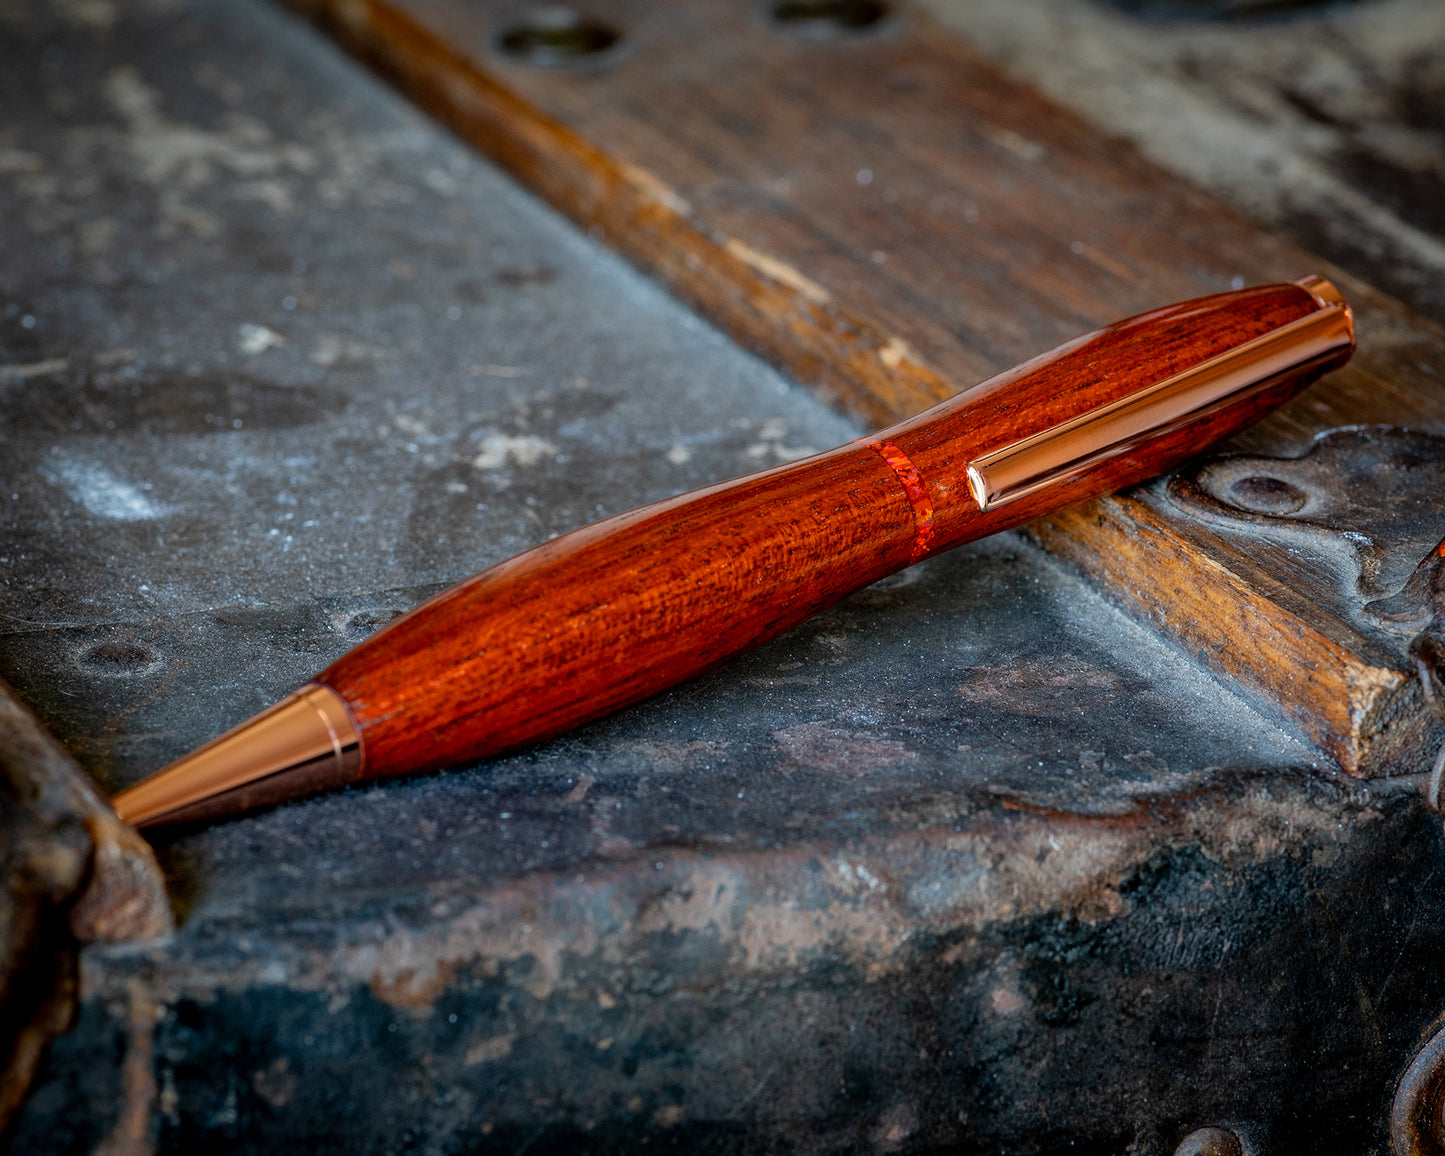 Bloodwood & Fire Opal Ballpoint Pen | Modified Slimline